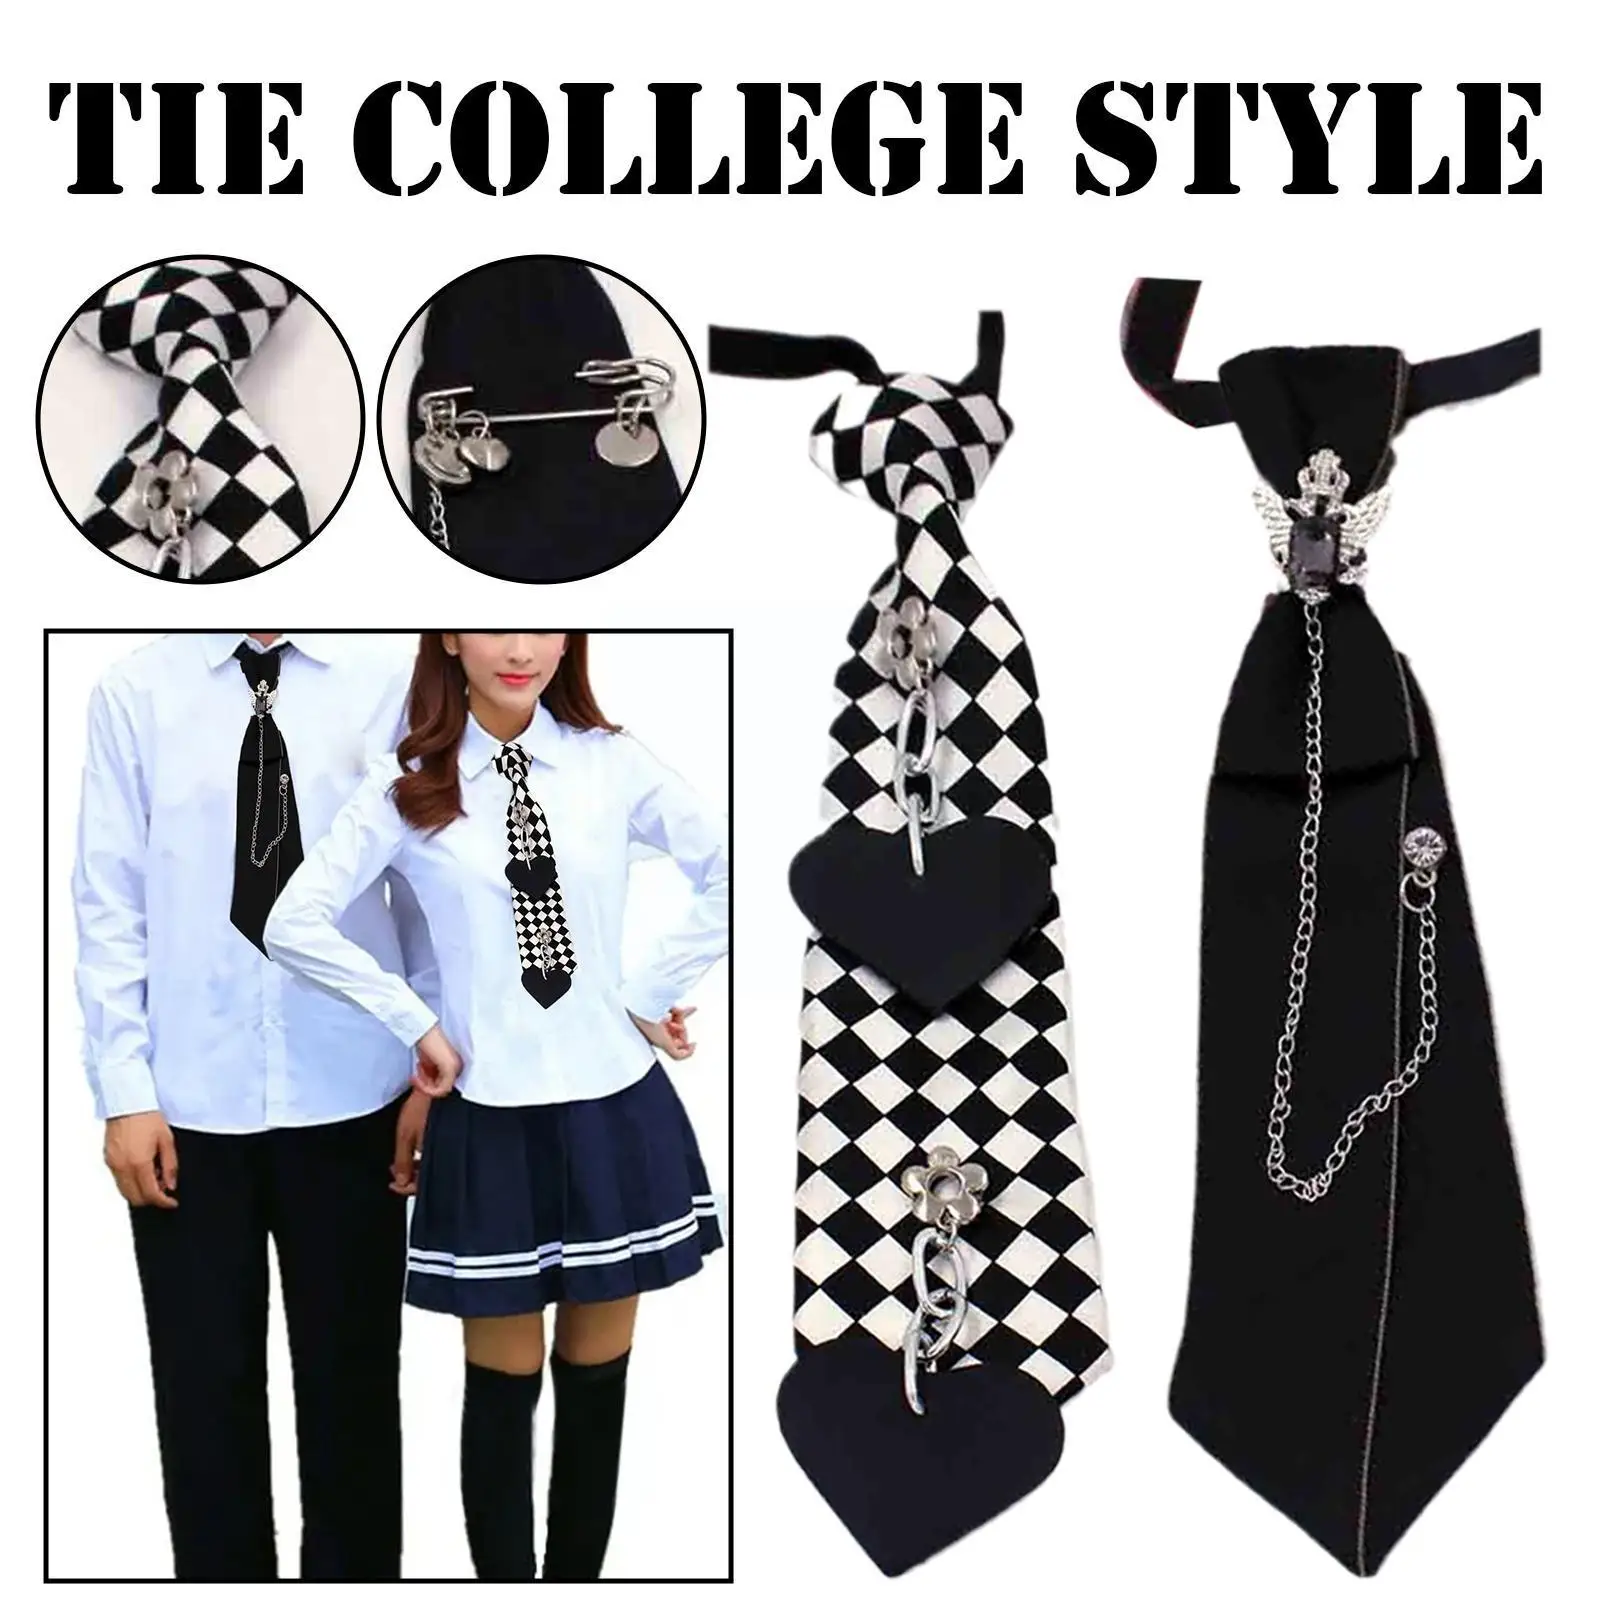 

Черный галстук в стиле стимпанк, готический металлический галстук с цепочкой и кристаллами, матовый черный галстук для мужчин и женщин, студенческий галстук K6j0